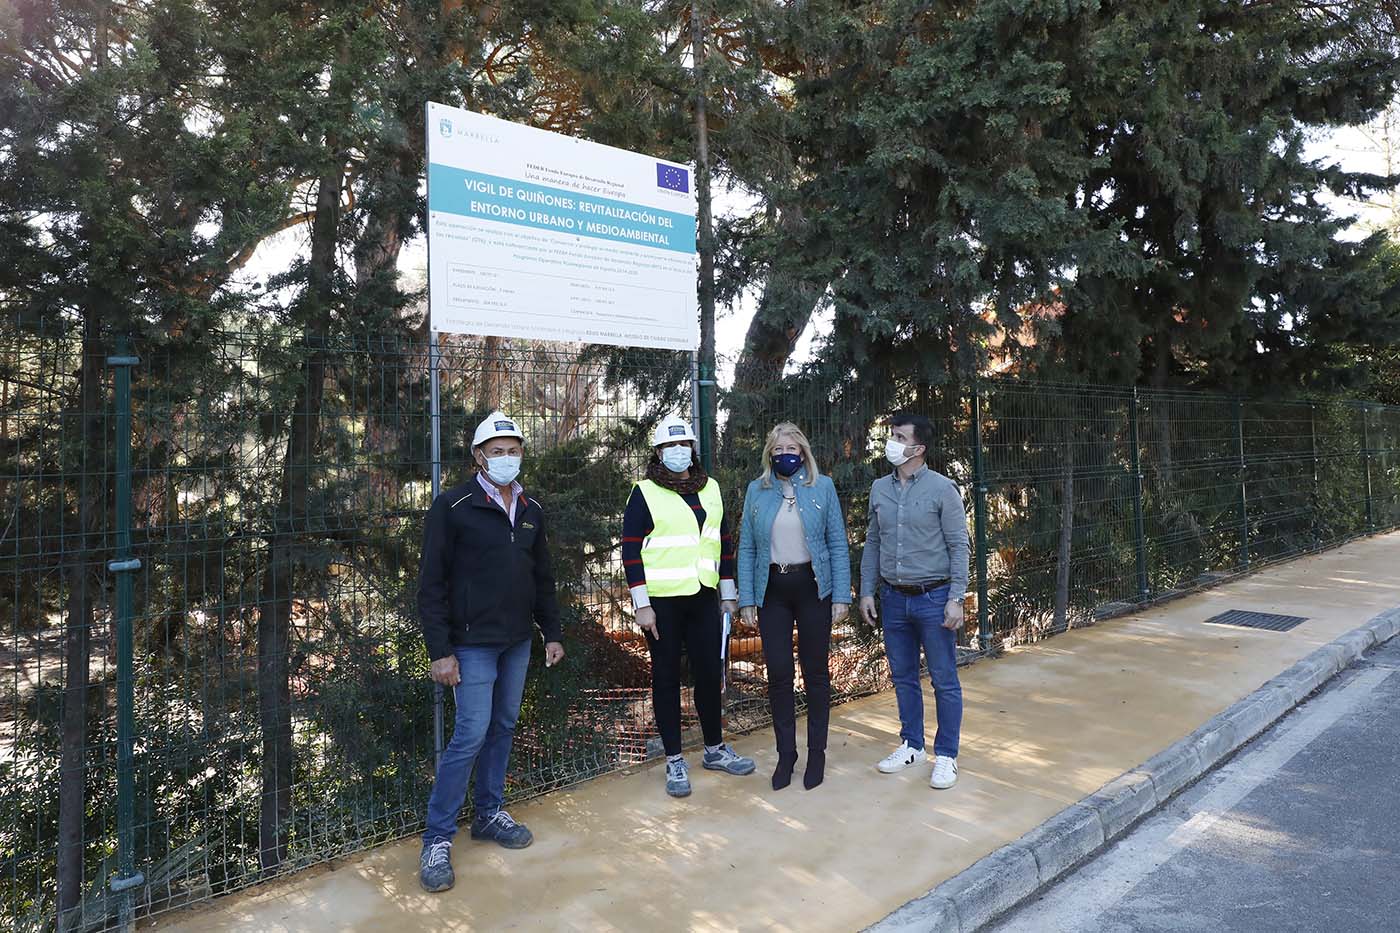 El Ayuntamiento comienza los trabajos para la revitalización de 4.600 metros cuadrados del entorno urbano y medioambiental del Vigil de Quiñones